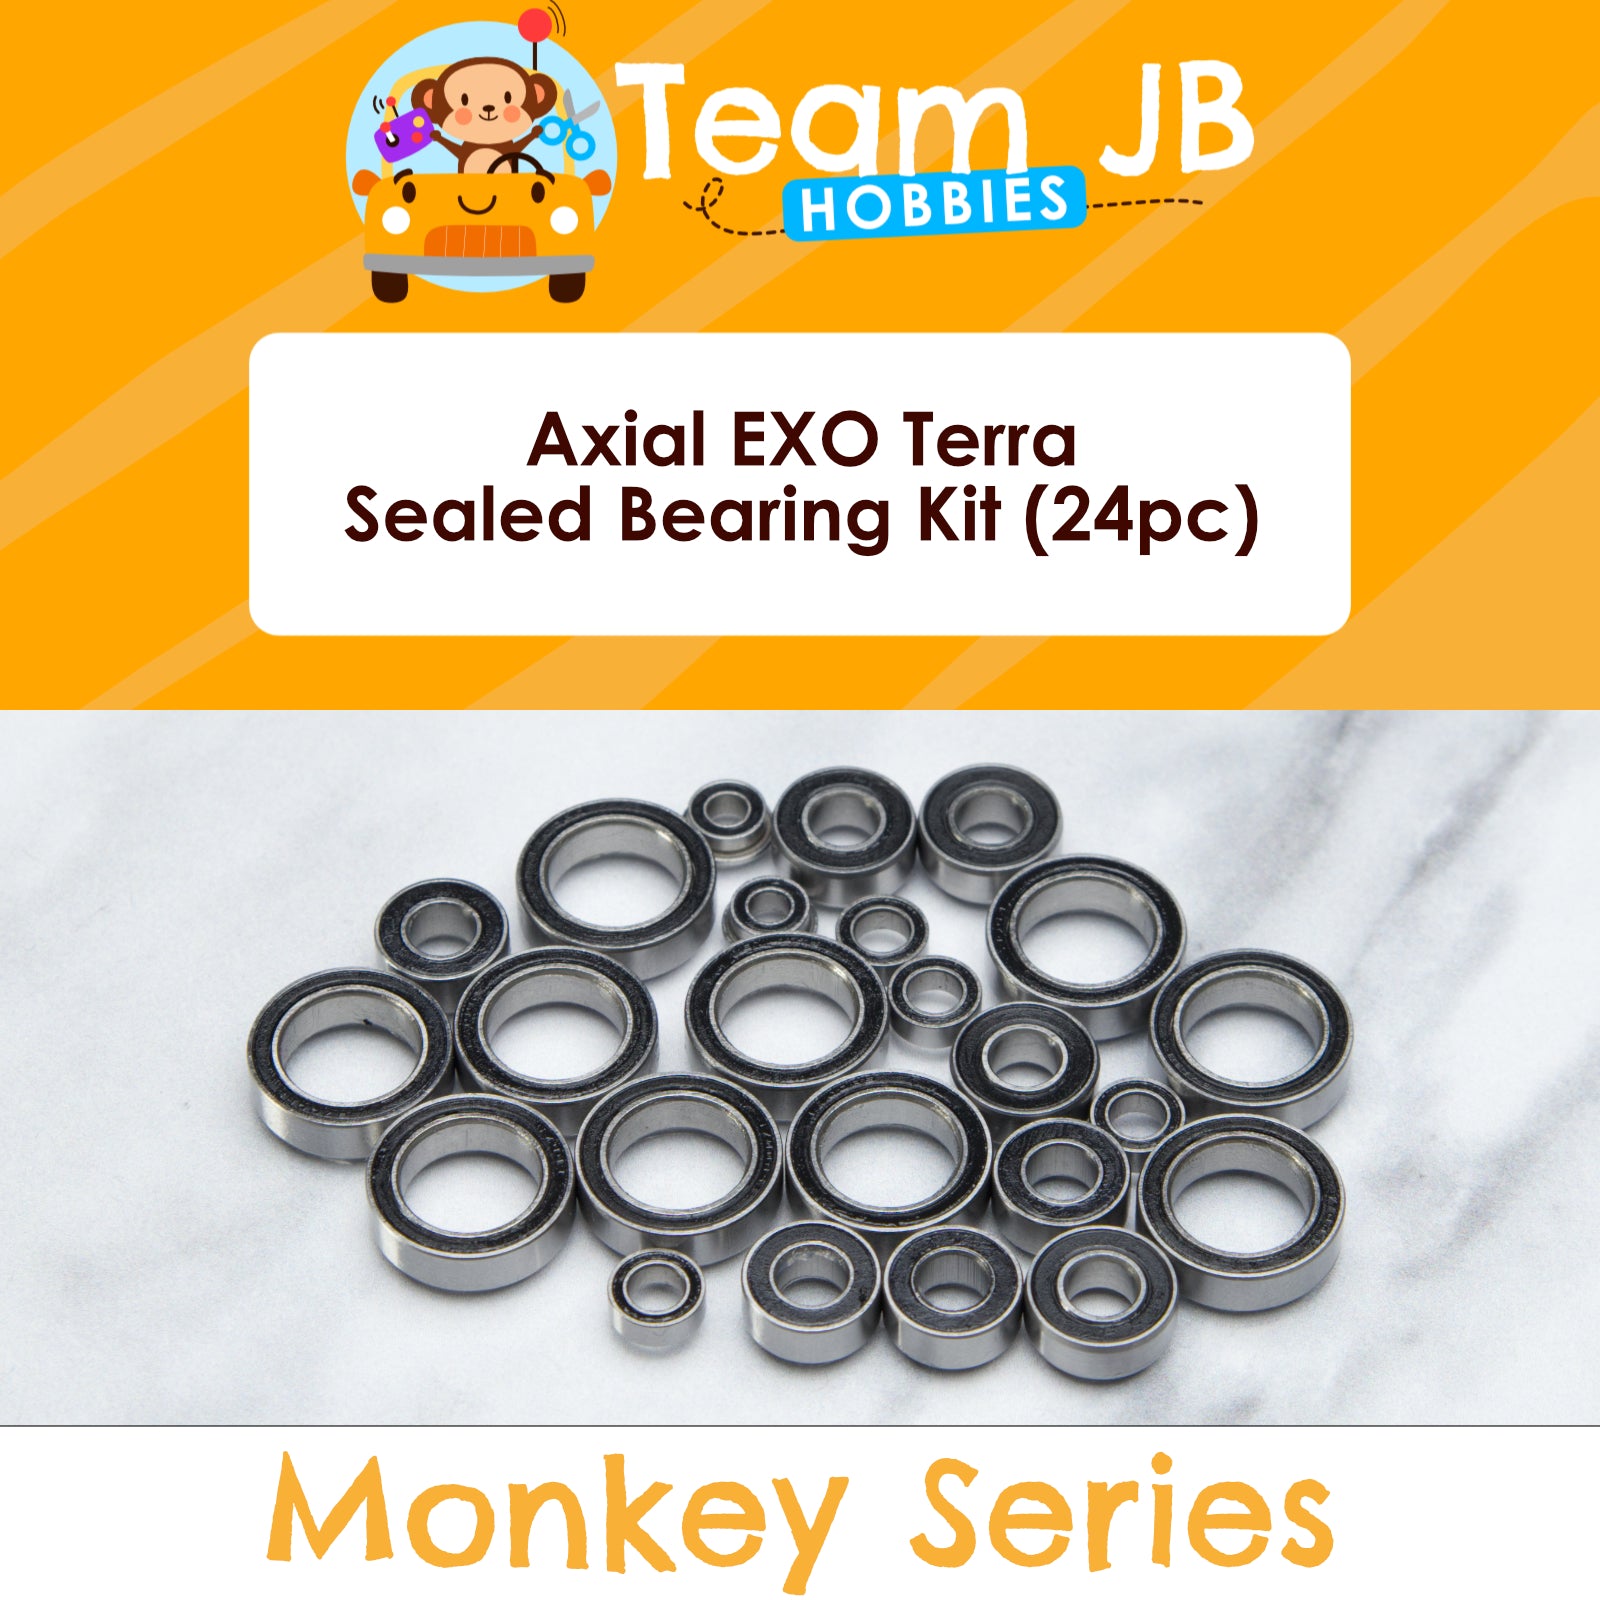 Axial EXO Terra - Sealed Bearing Kit